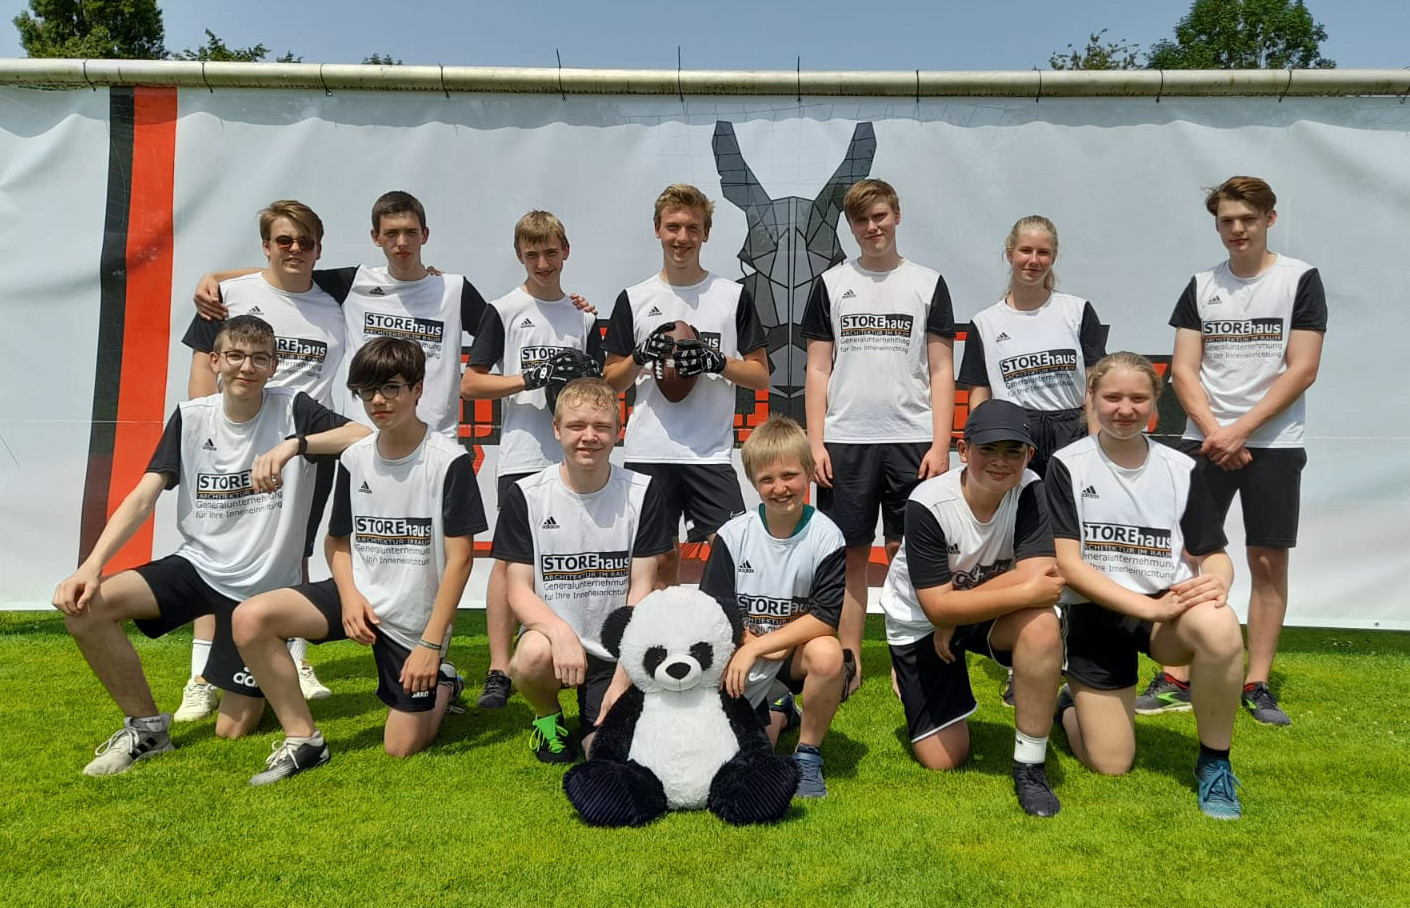 Teilnahme am Flagfootball-Turnier der Weseler Rhine Flags am 18. und 19. 06. 2022 im Aue-Stadion. Mehr auf der Homepage der Turn-Abteilung.